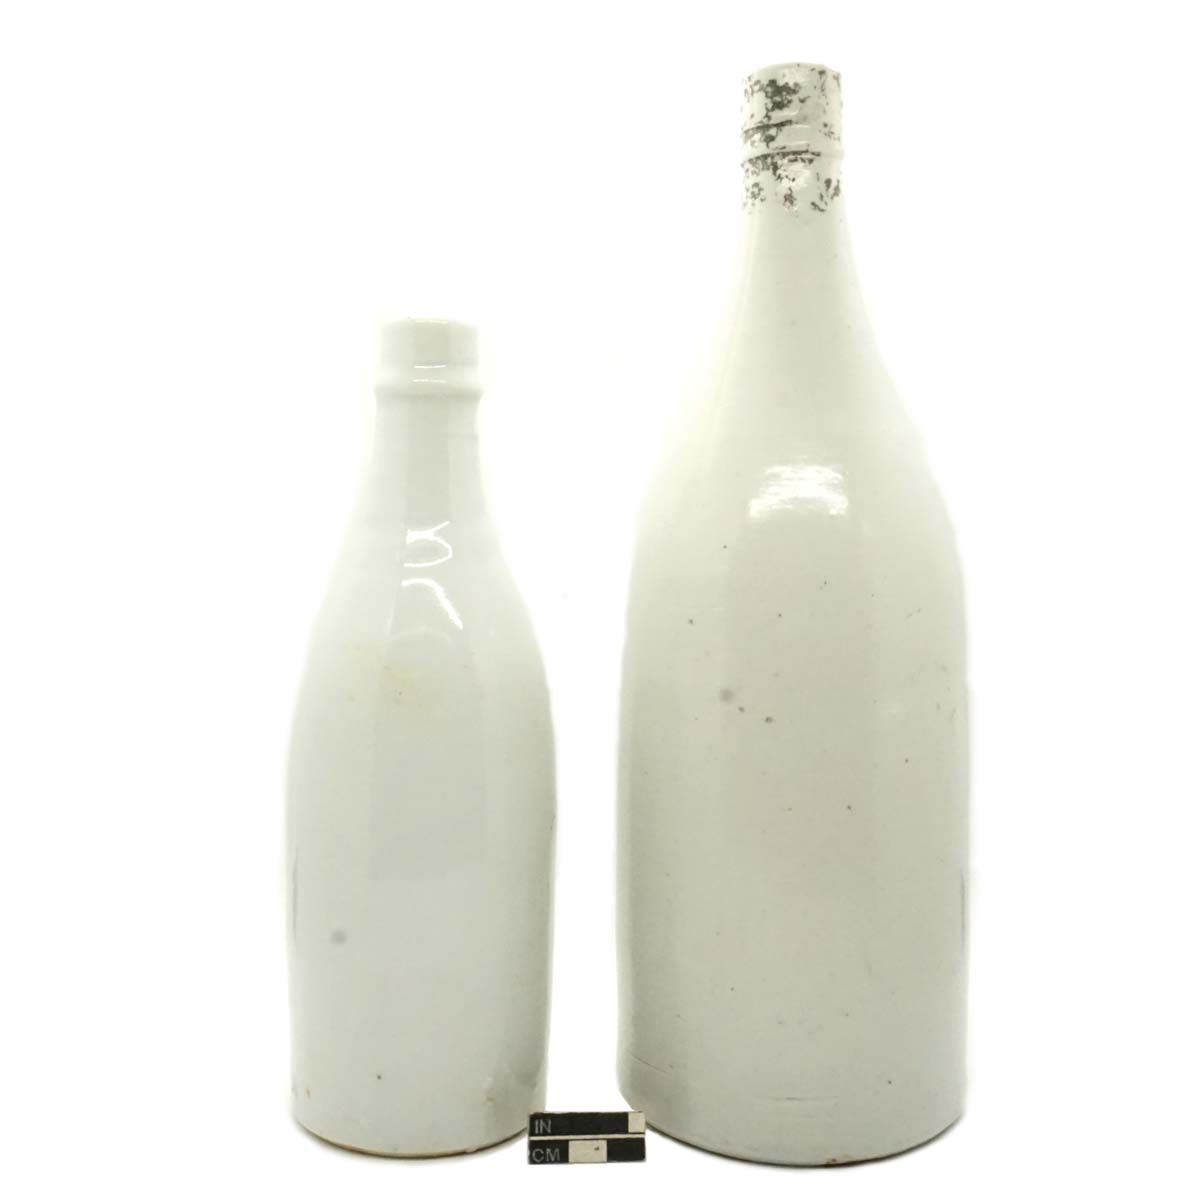 Sake bottles (saka-bin), ceramic.